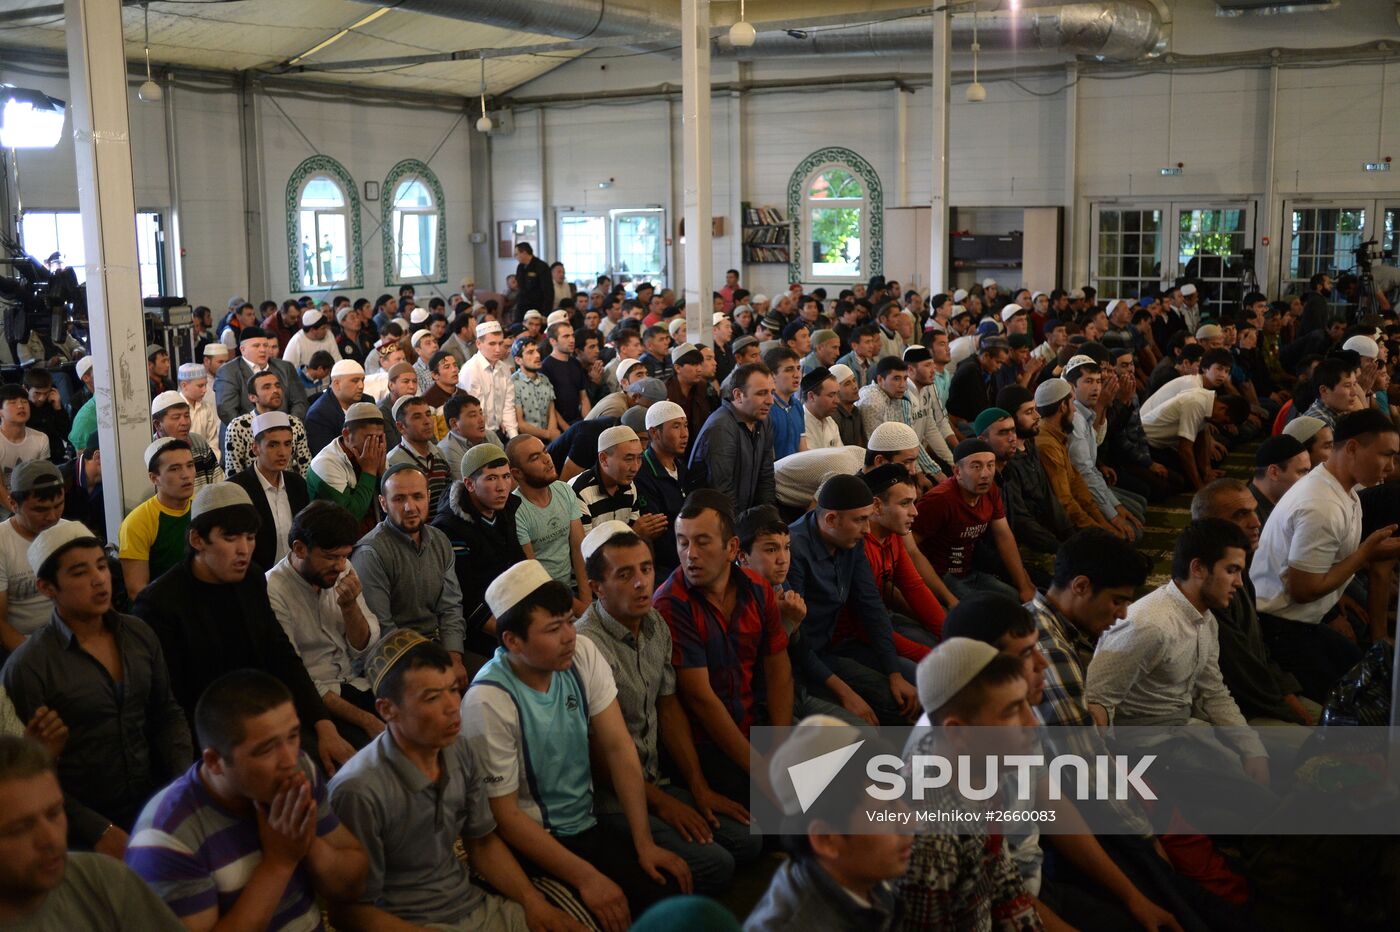 Muslims celebrate Eid al-Fitr in Moscow